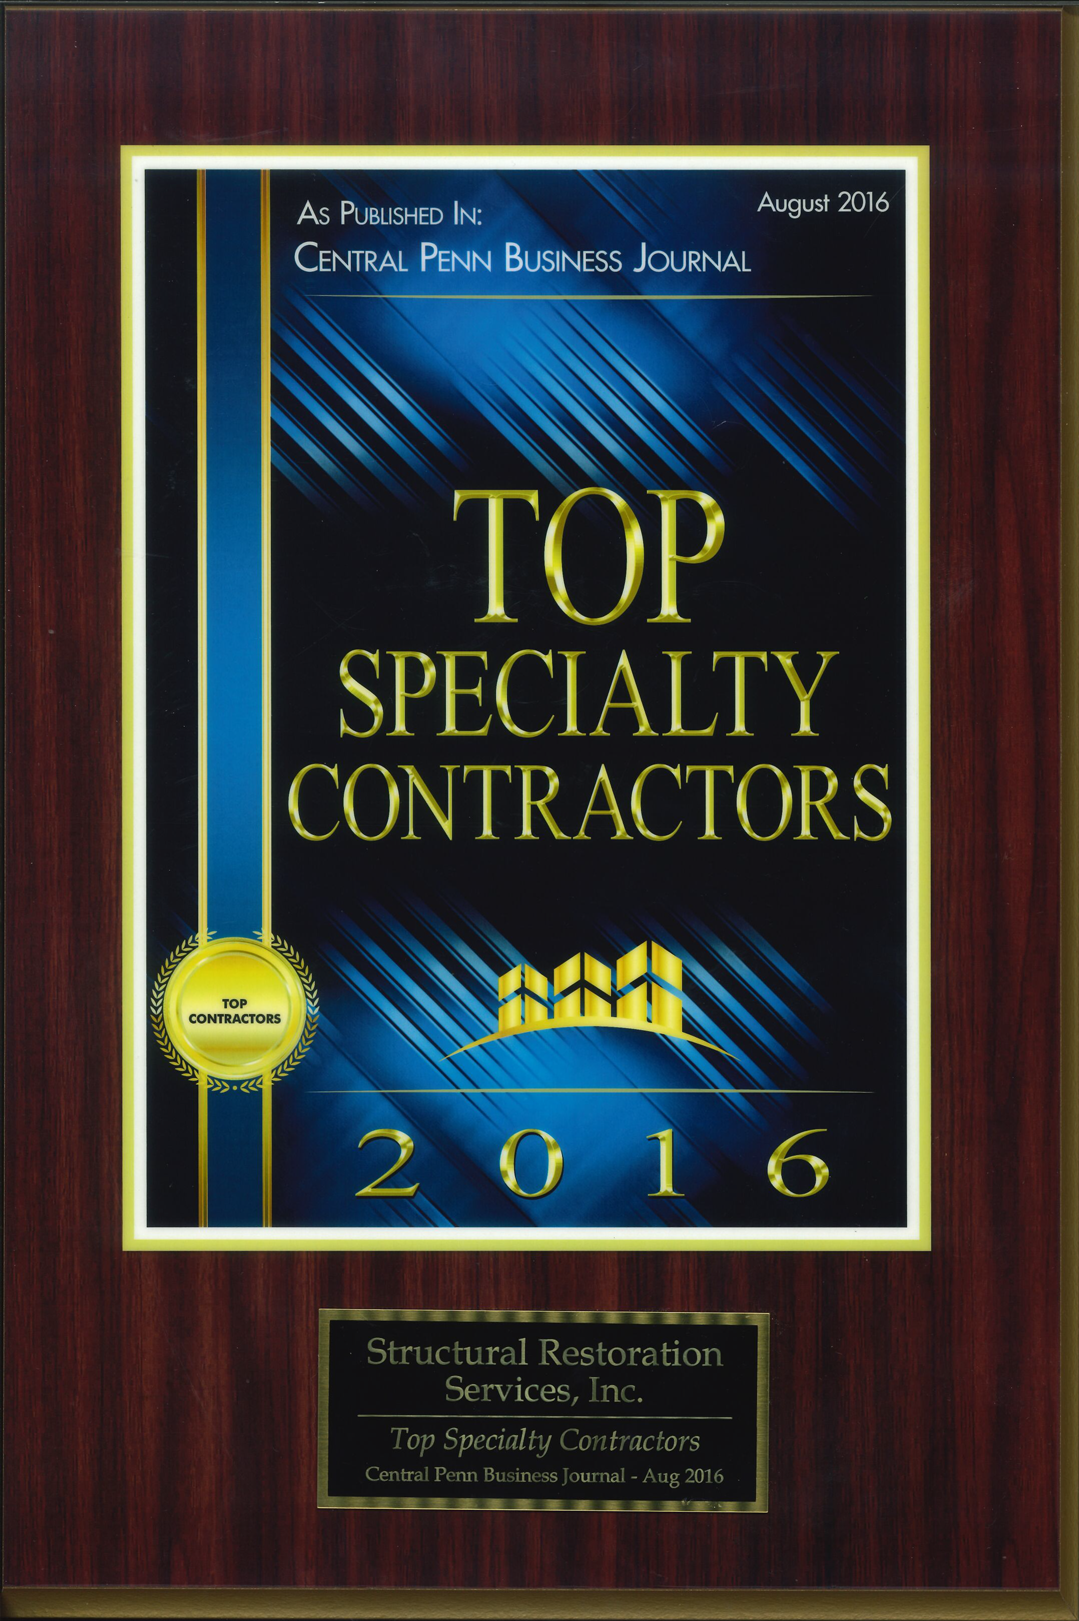 2016 Top Specialty Contractors award